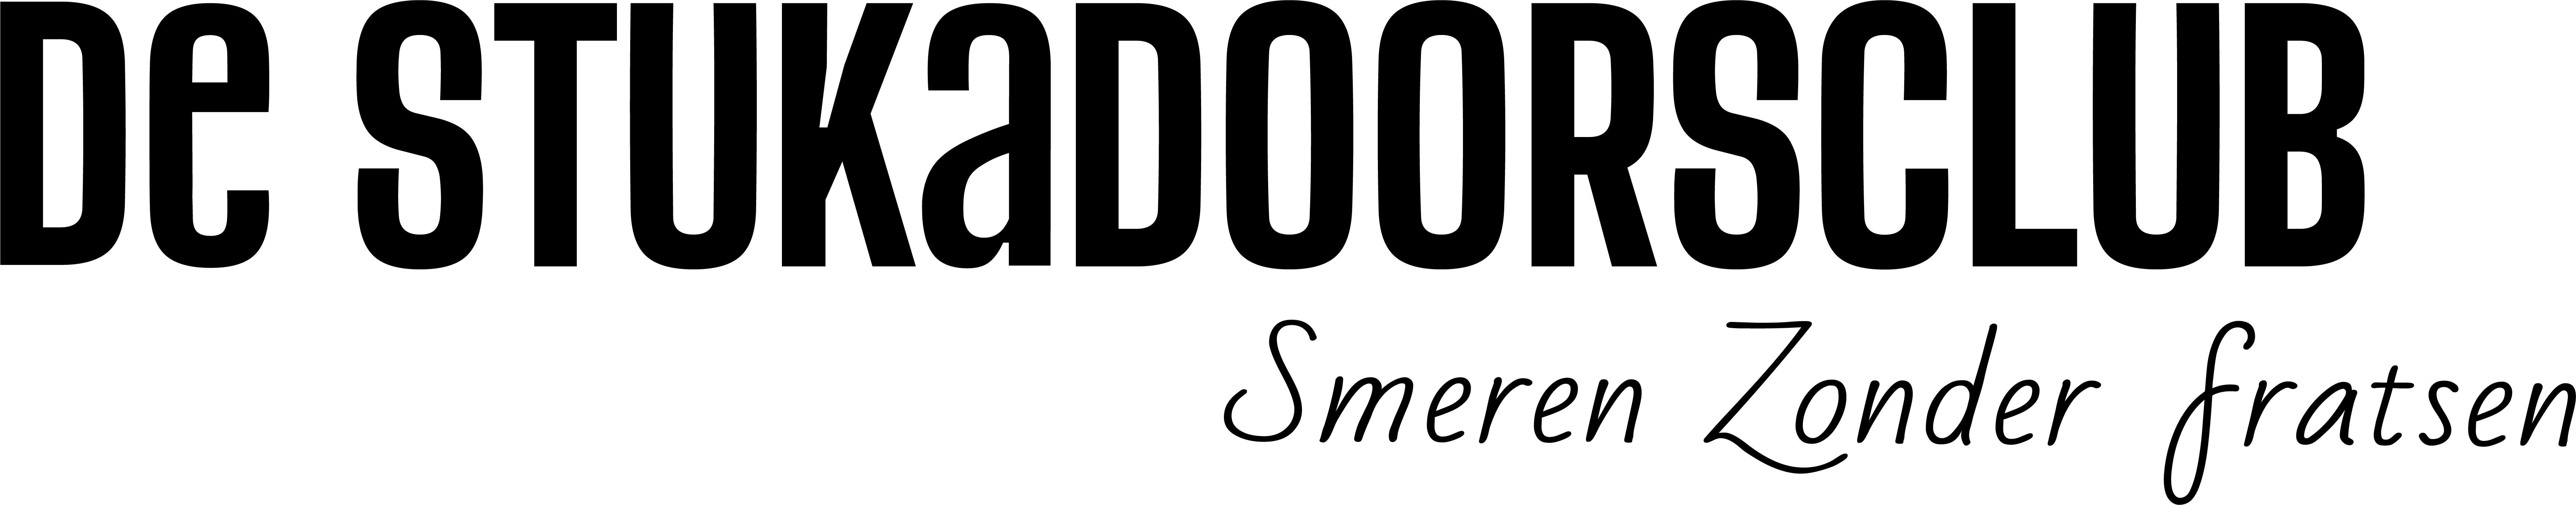 De Stukadoorsclub logo